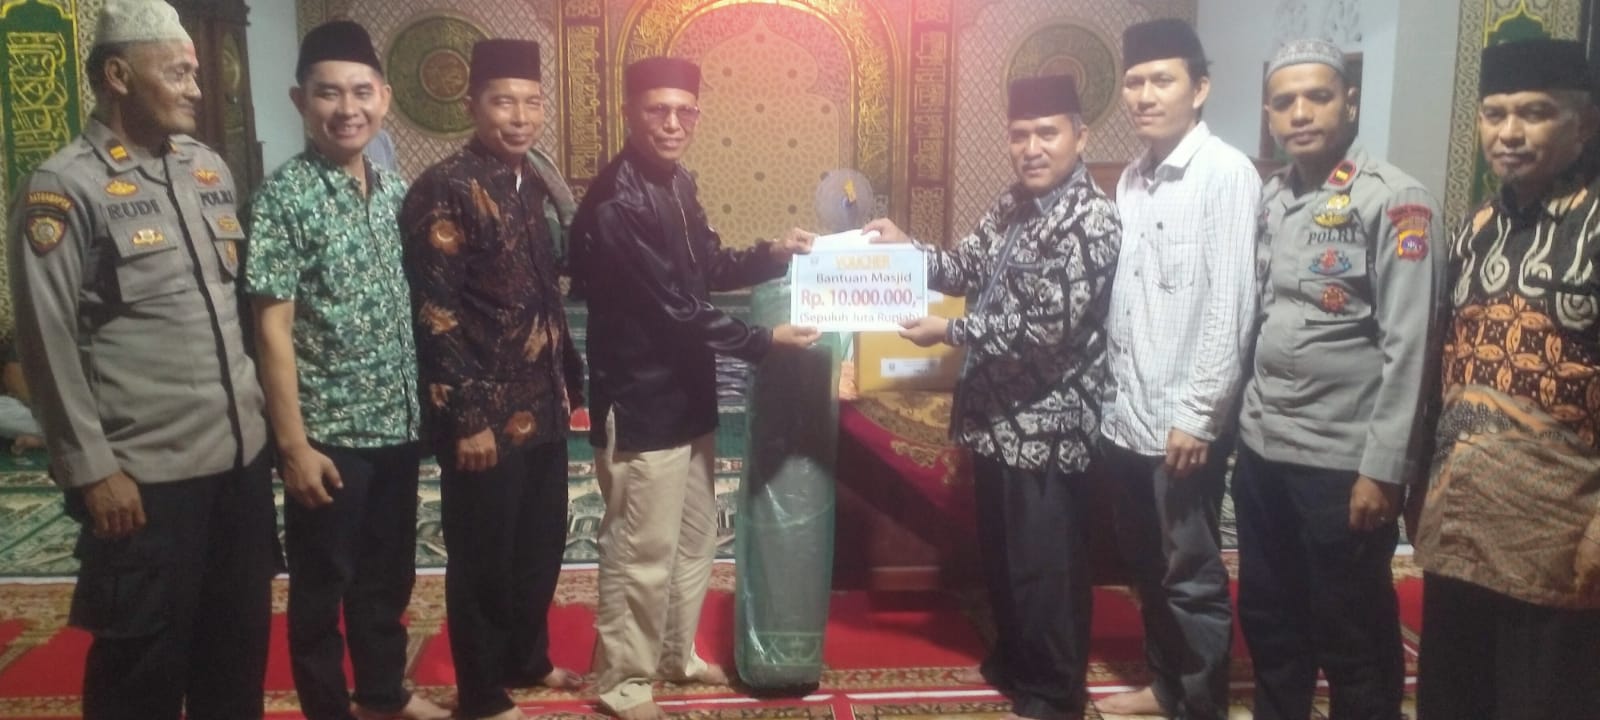 Anggota DPRD Purwanto dan Yulindo Santuni Masjid Ihsan Sialang Gaung dalam Safari Ramadhan ke-3